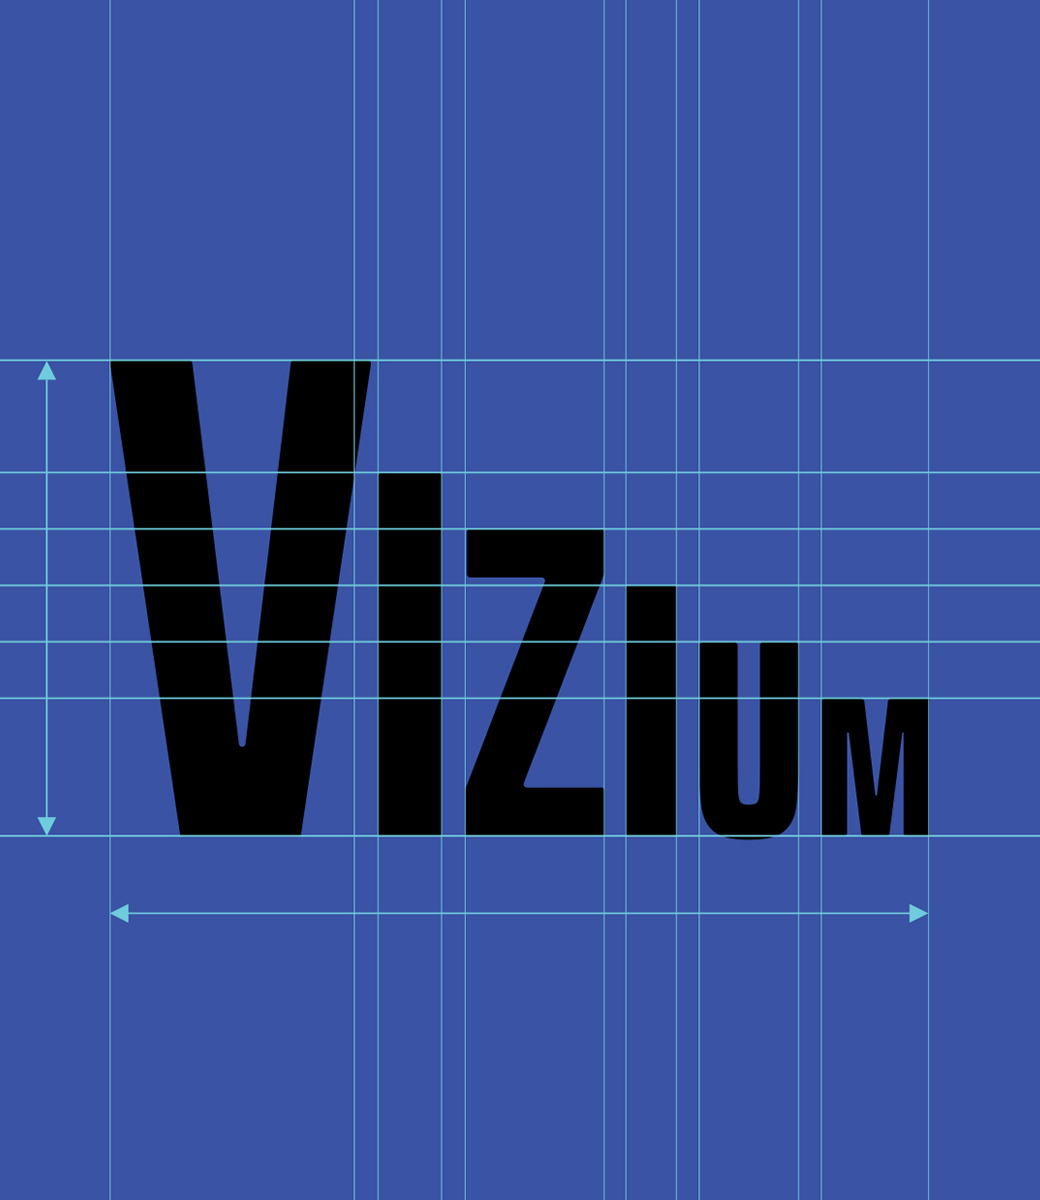 vizium_3